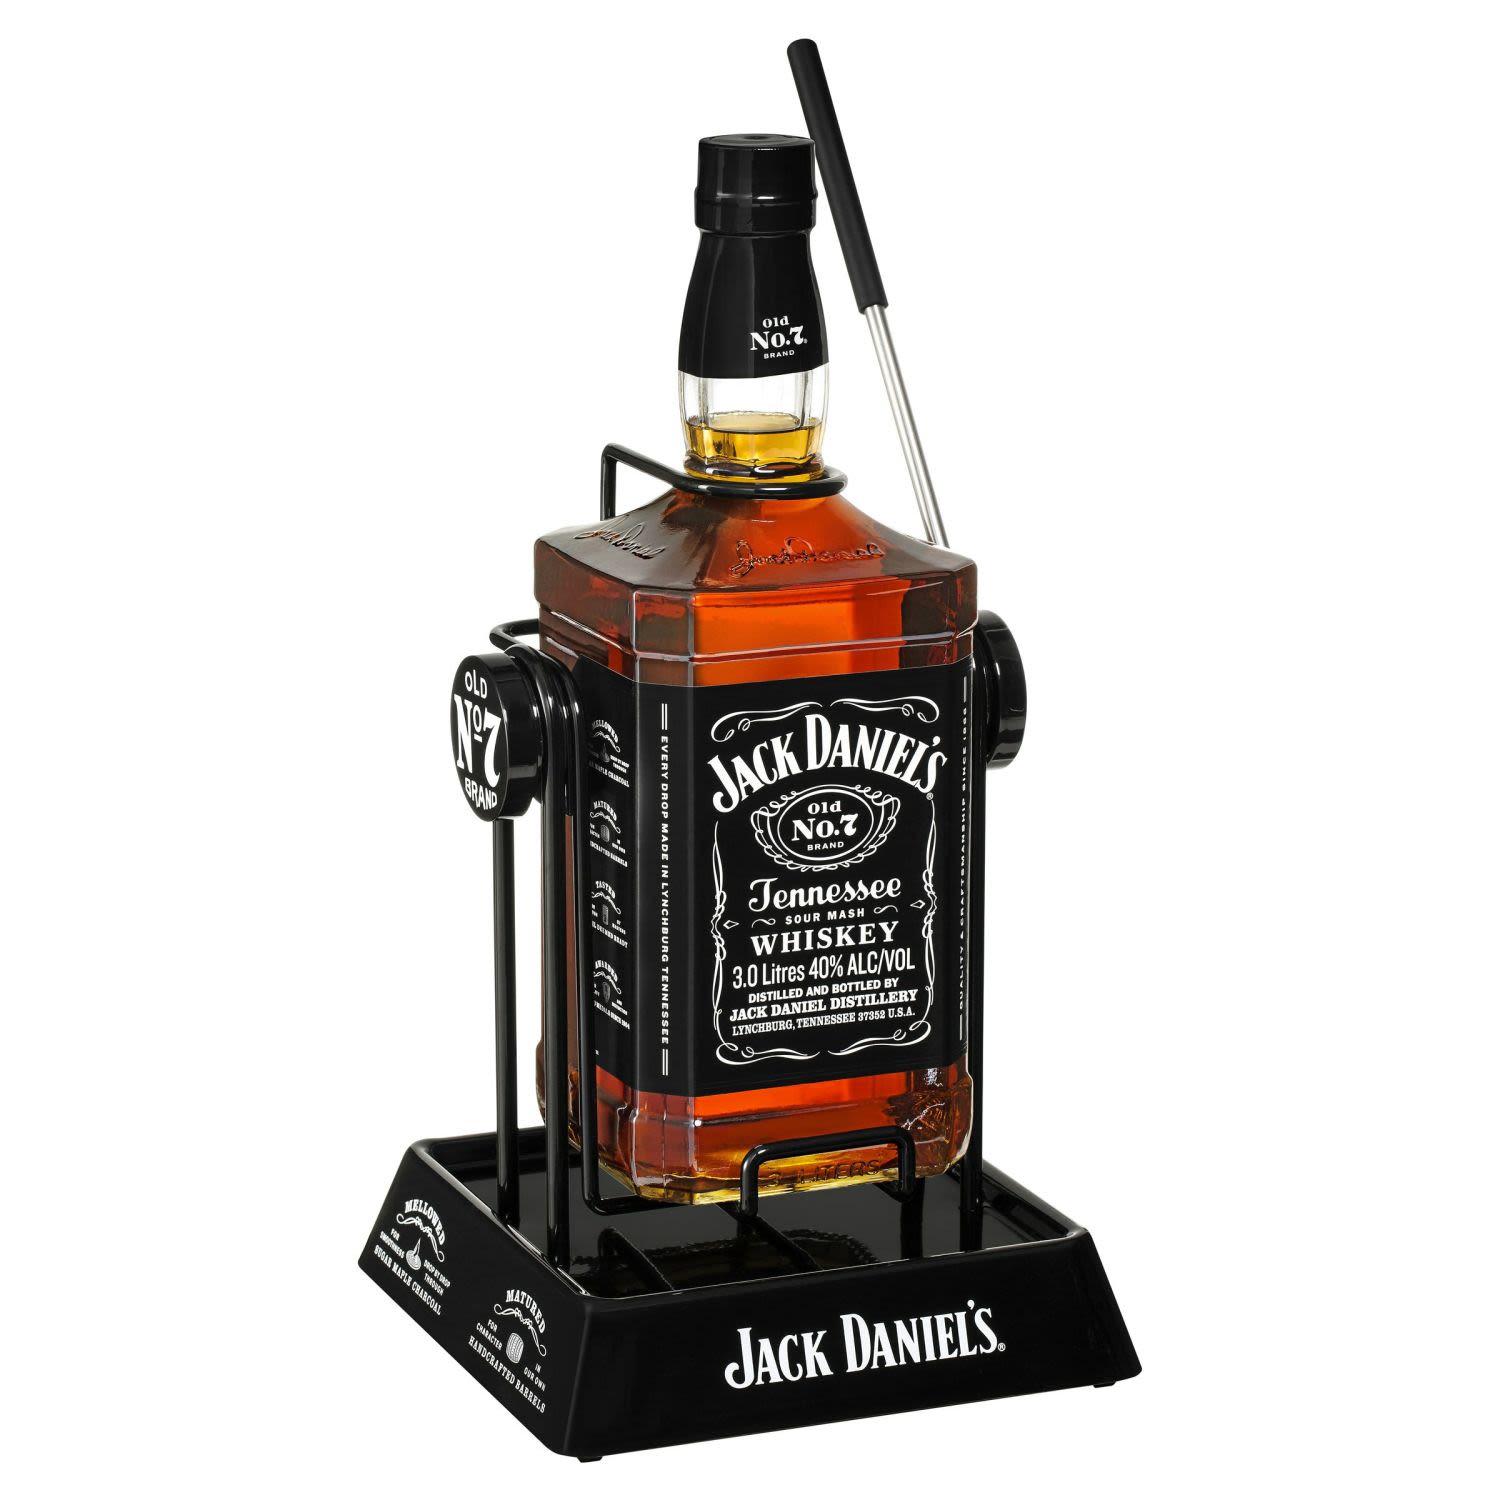 Jack Daniel's & Cradle 3L<br /> <br />Alcohol Volume: 40.00%<br /><br />Pack Format: Bottle<br /><br />Standard Drinks: 94.7<br /><br />Pack Type: Bottle<br /><br />Country of Origin: USA<br />